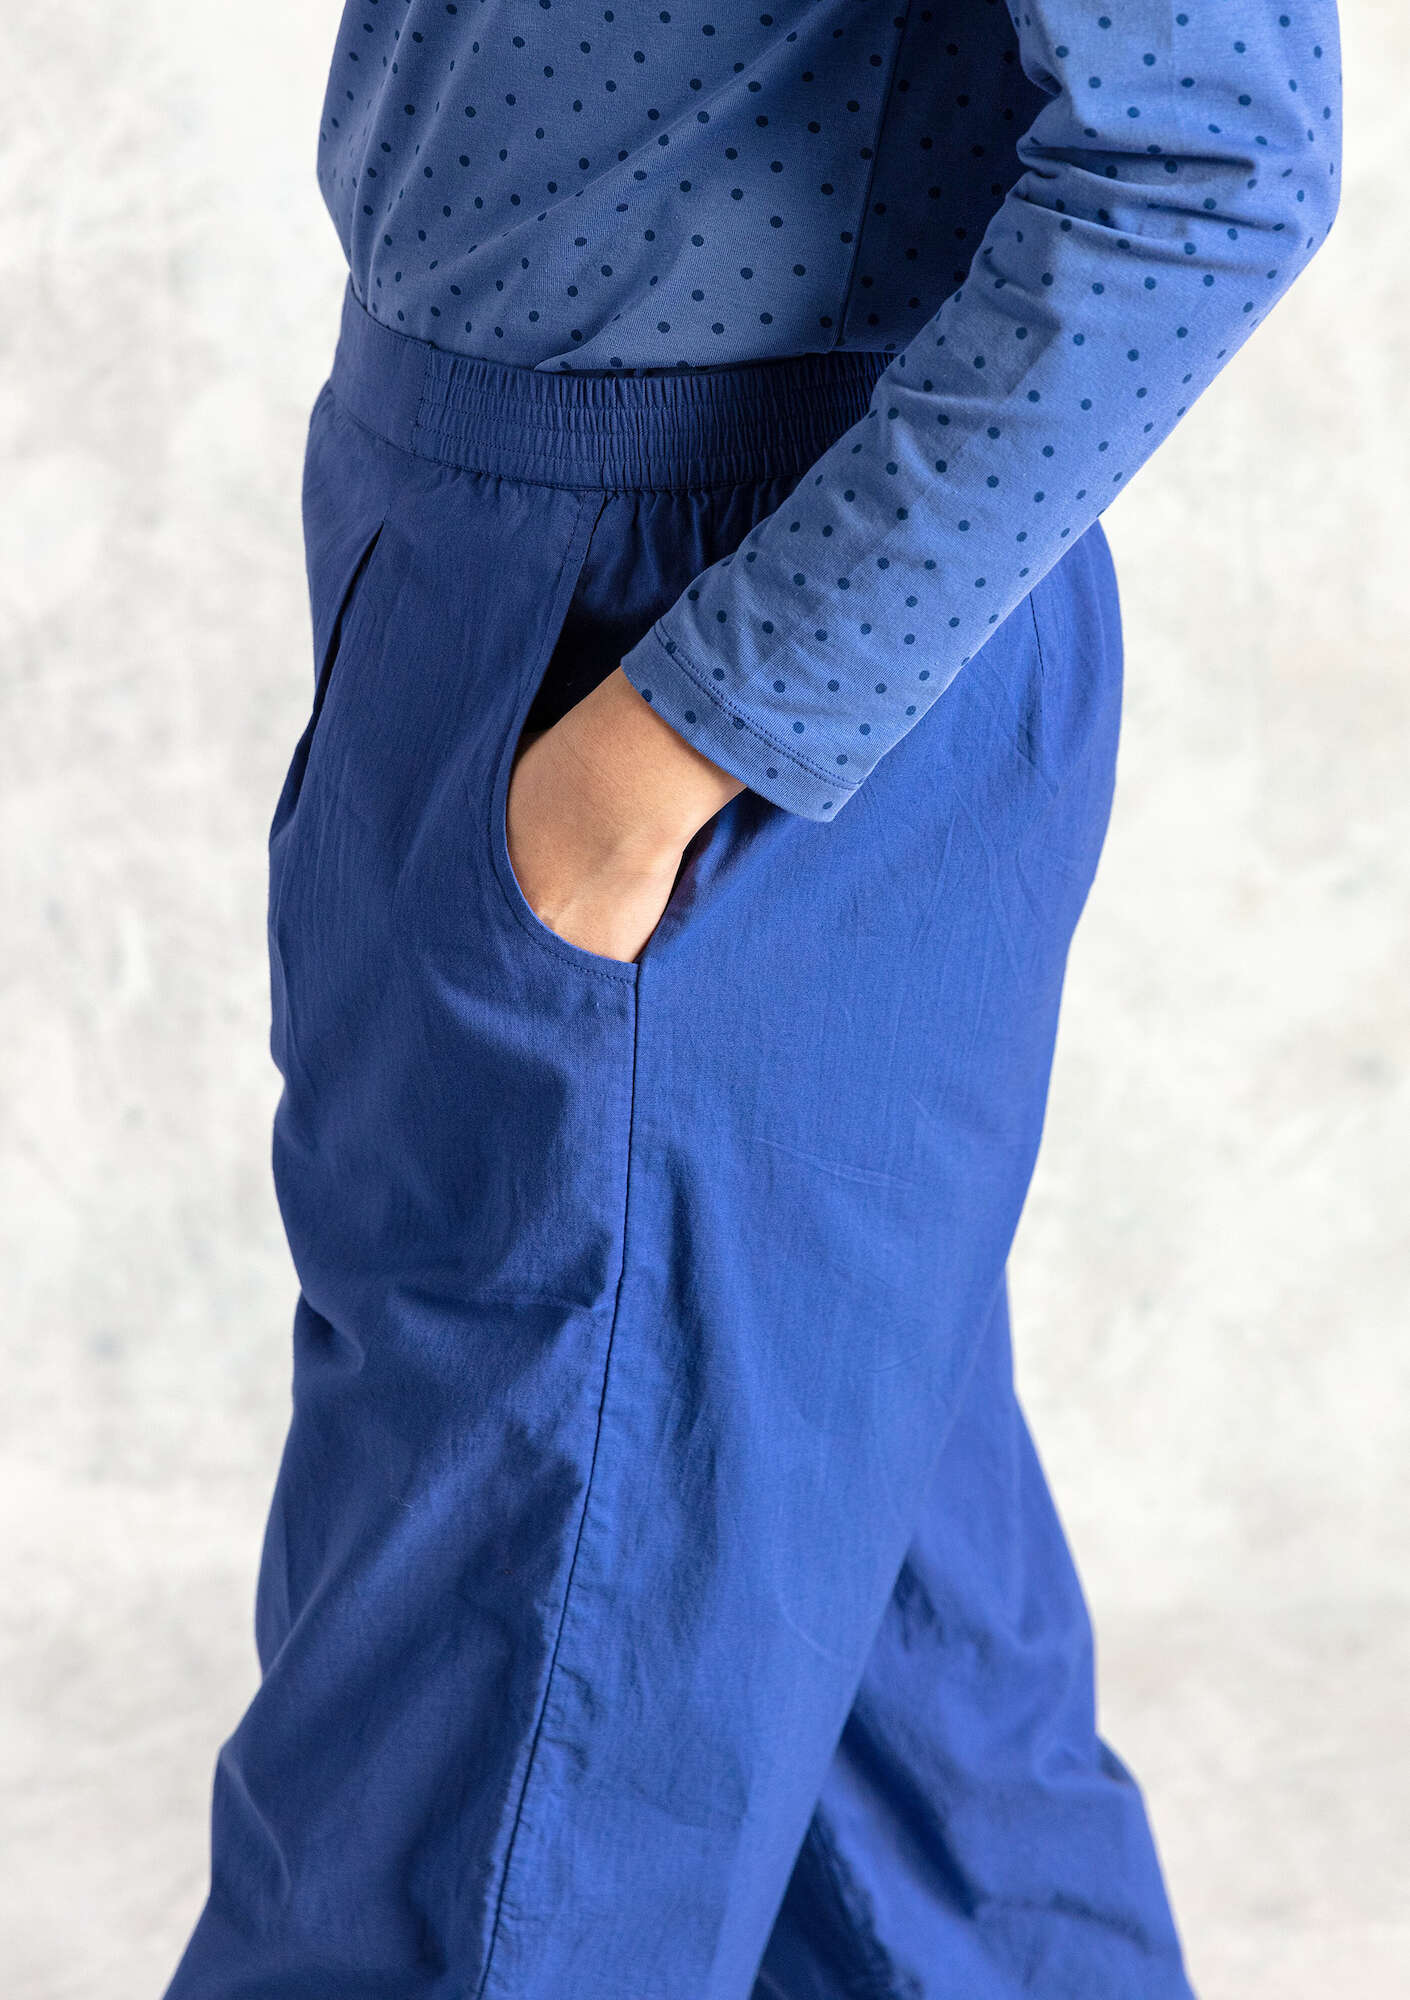 Vævede bukser  Hi  i økologisk bomuld mørk himmelblå